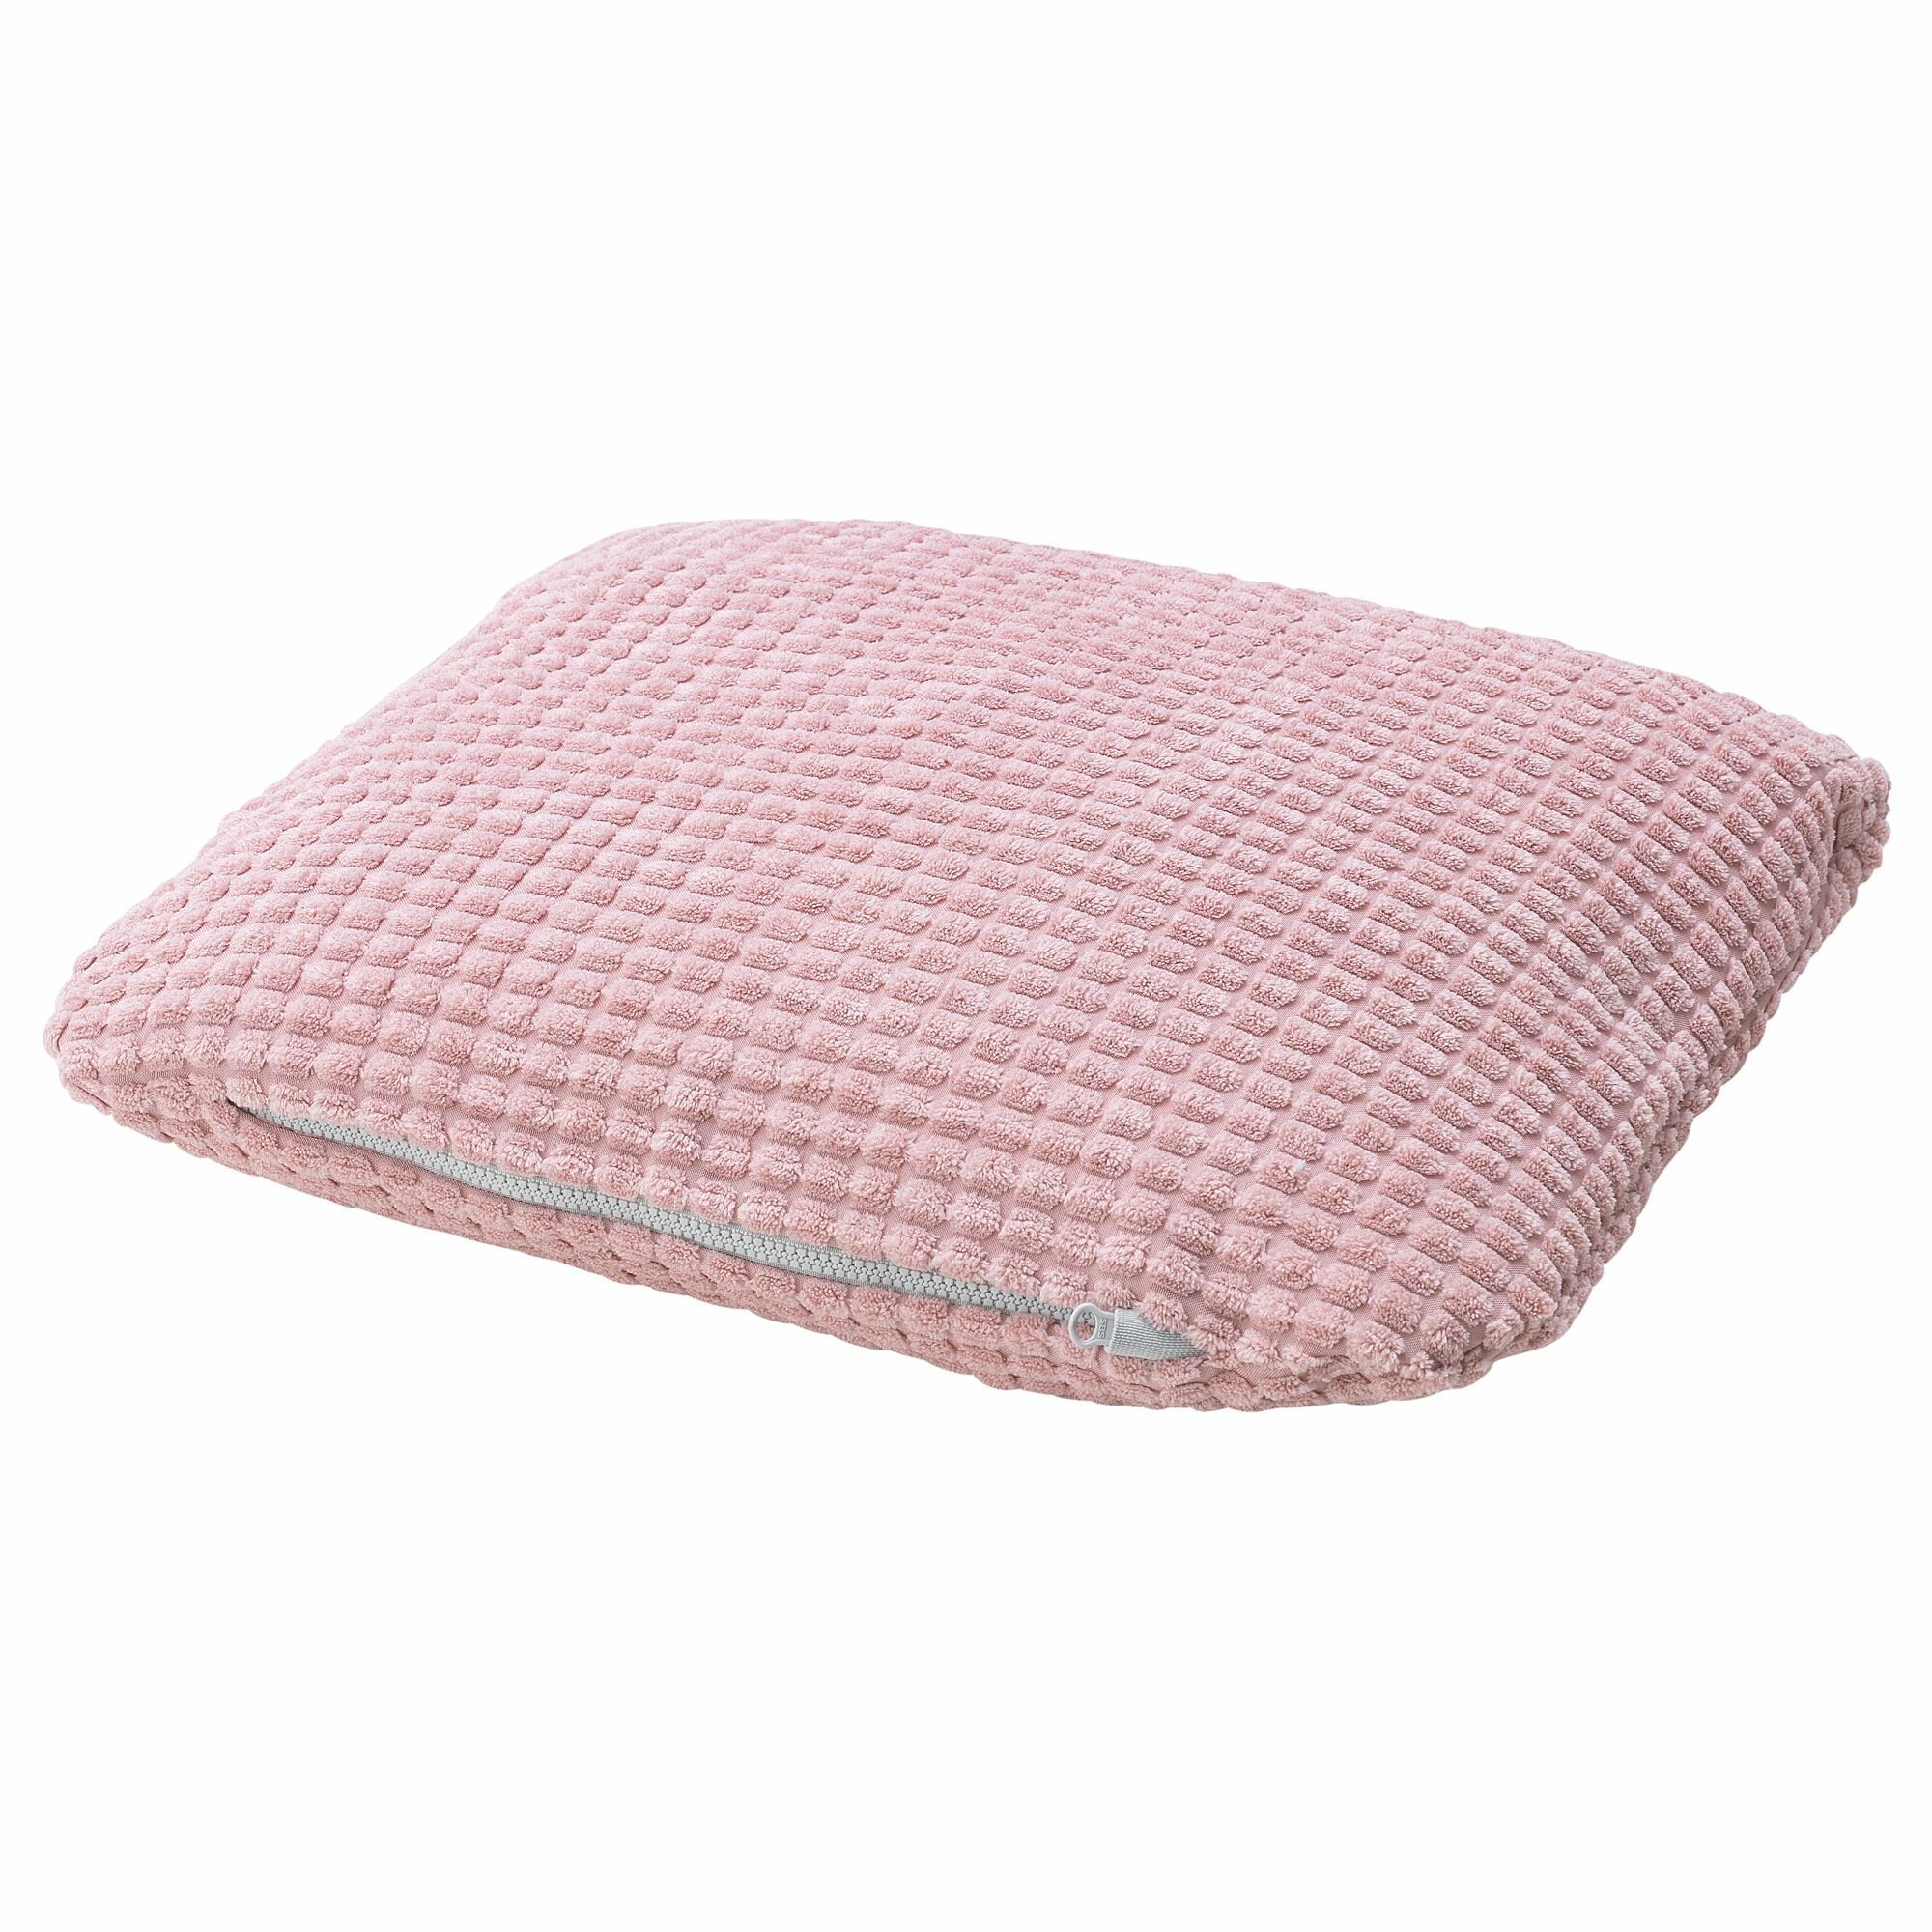 Икея / IKEA LURVIG, лурвиг, подушка, розовый, 33x38 см